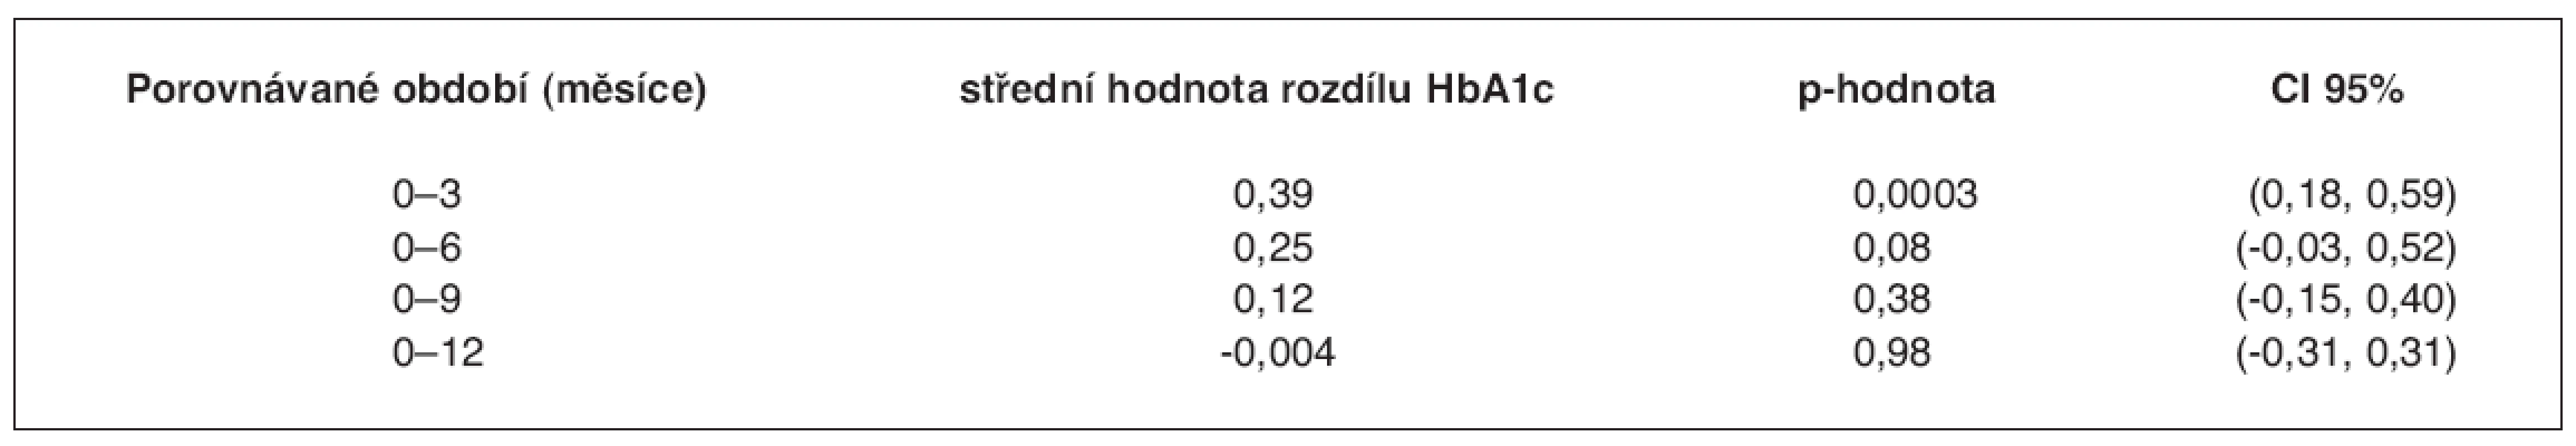 Změna v HbA1c v průběhu sledování